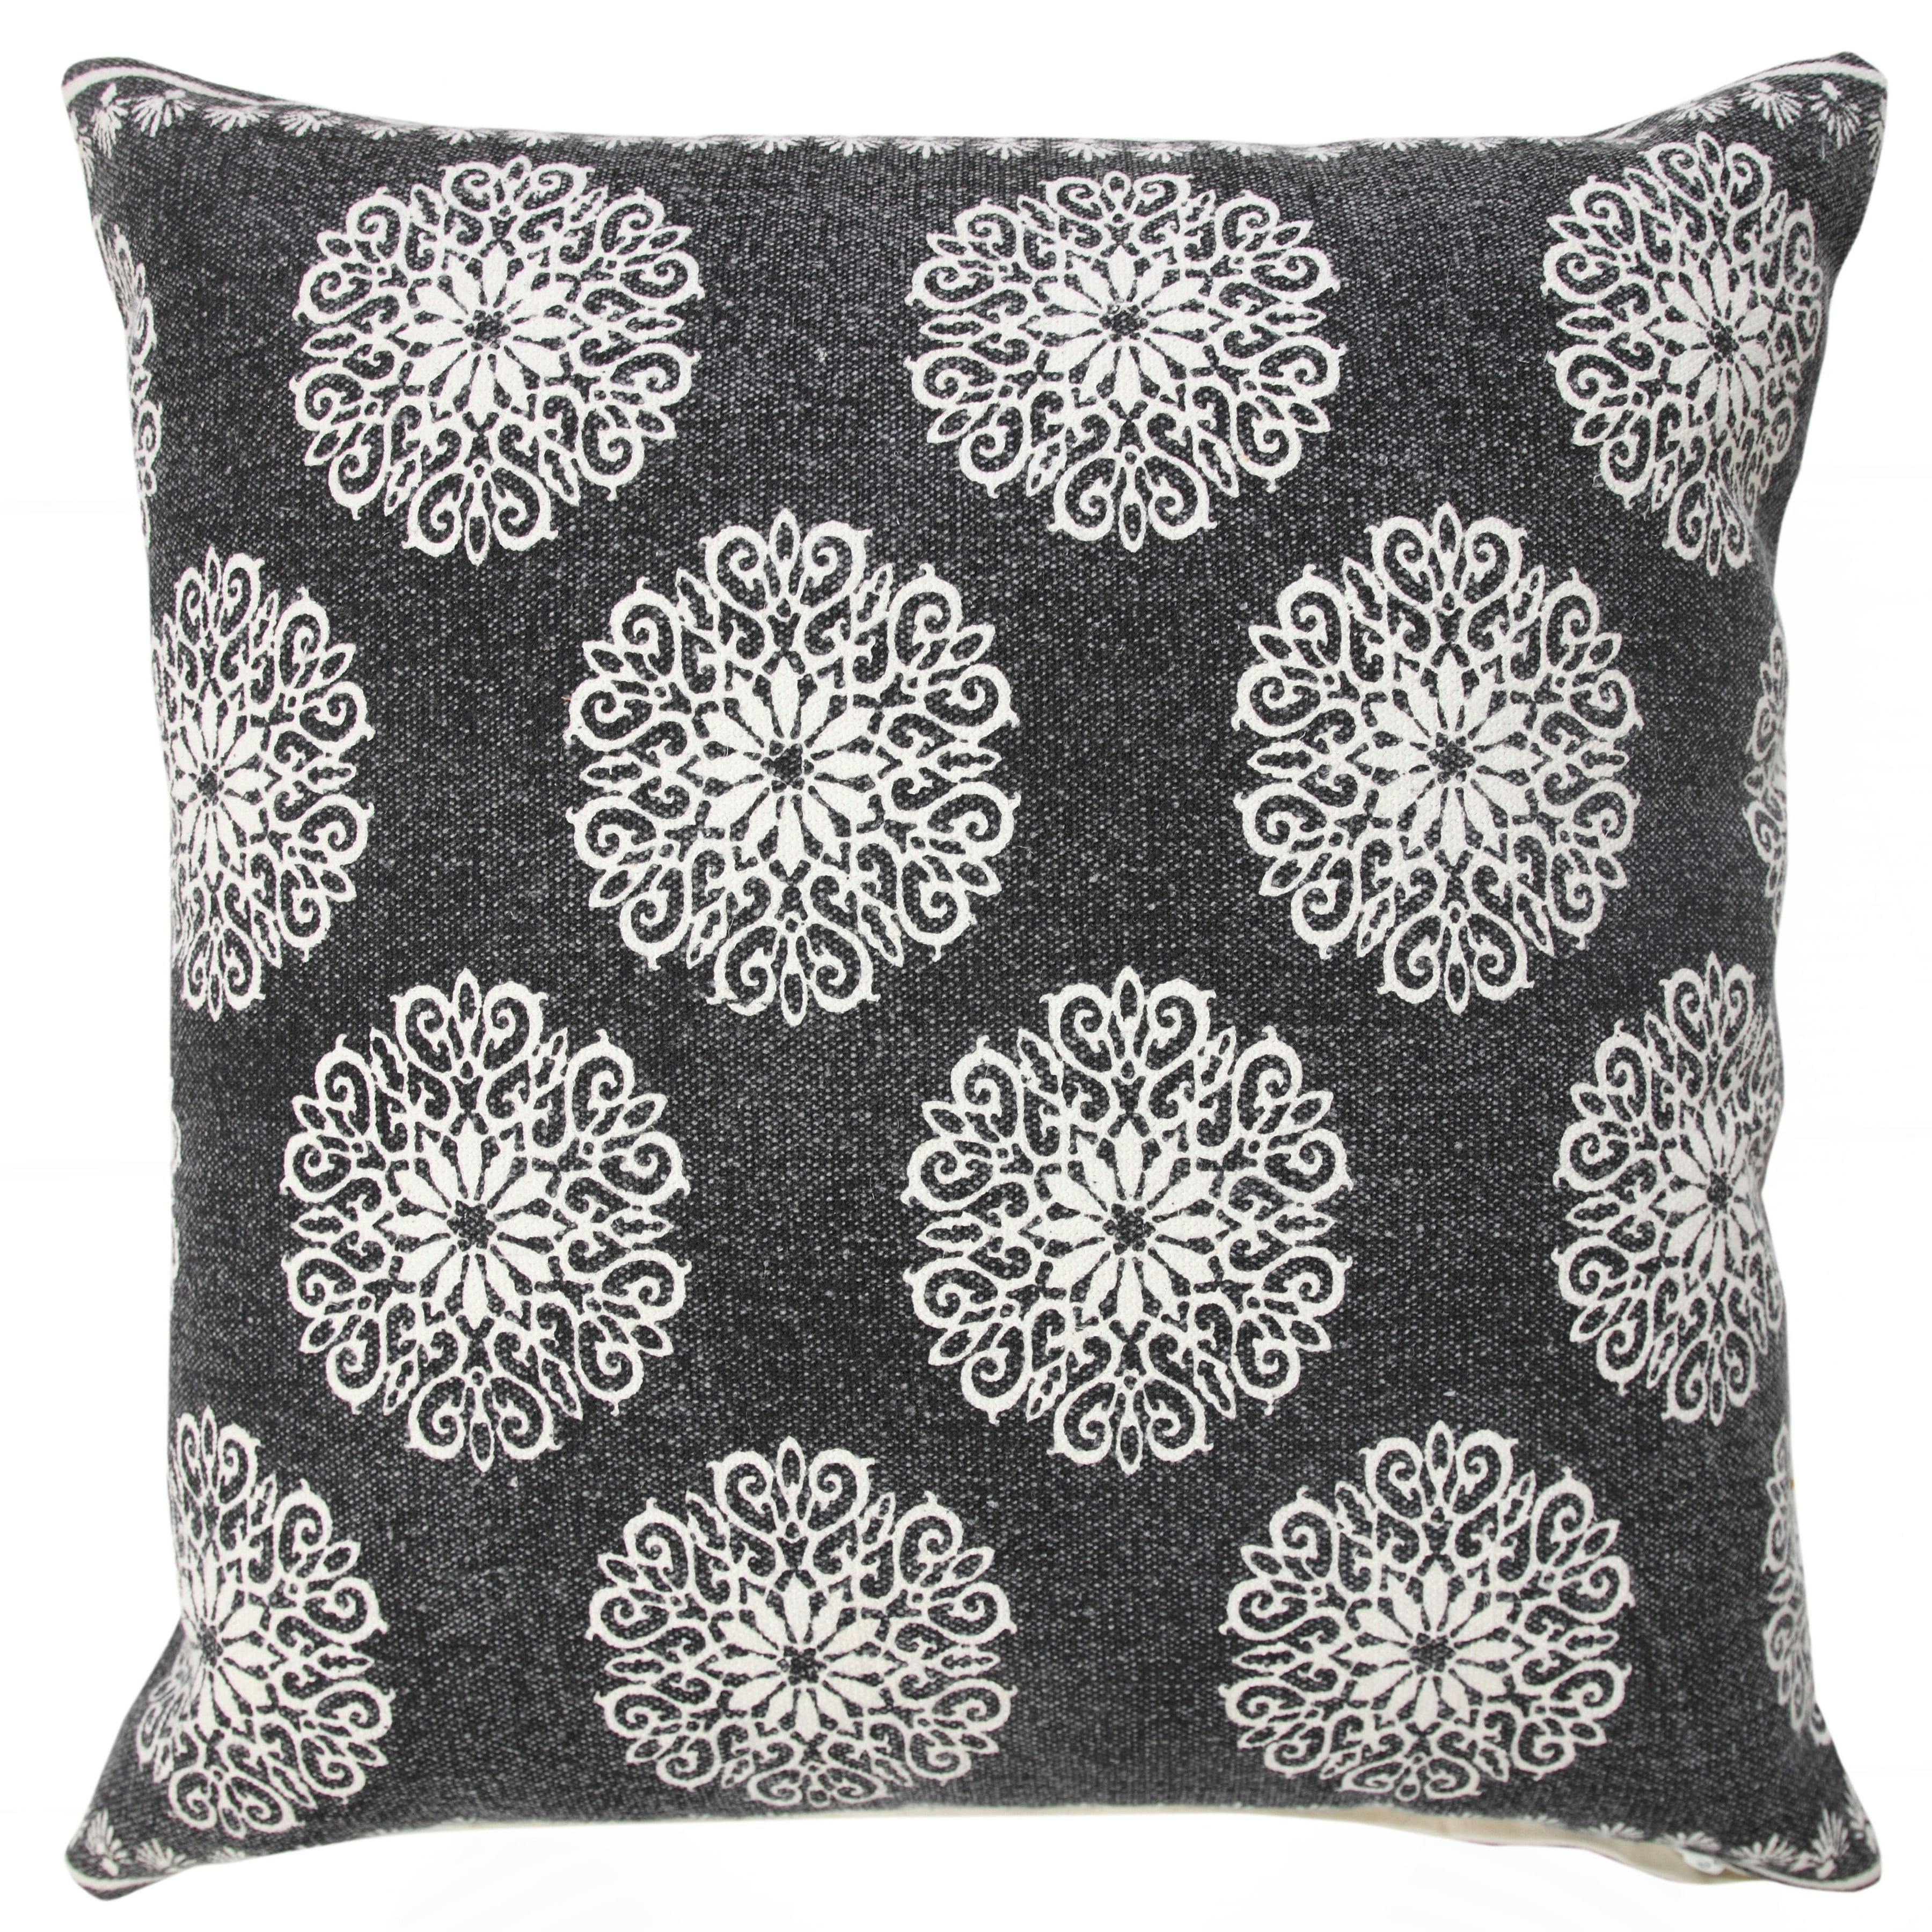 20" Square Multicolor Floral Cotton Accent Pillow Set